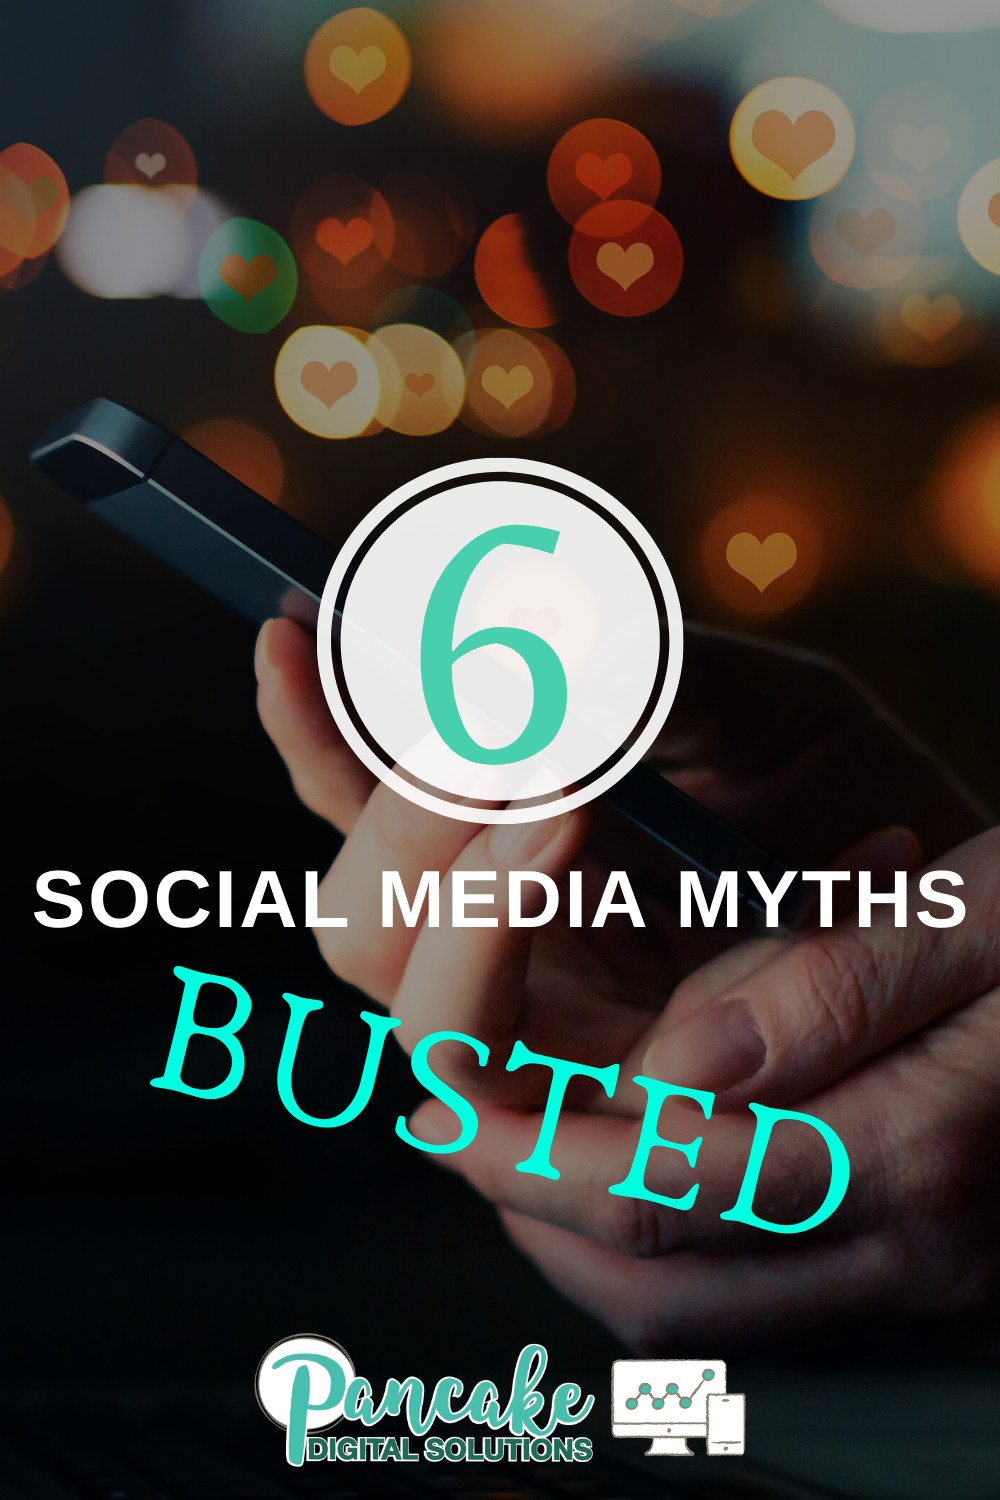 6 Social Media Myths Busted